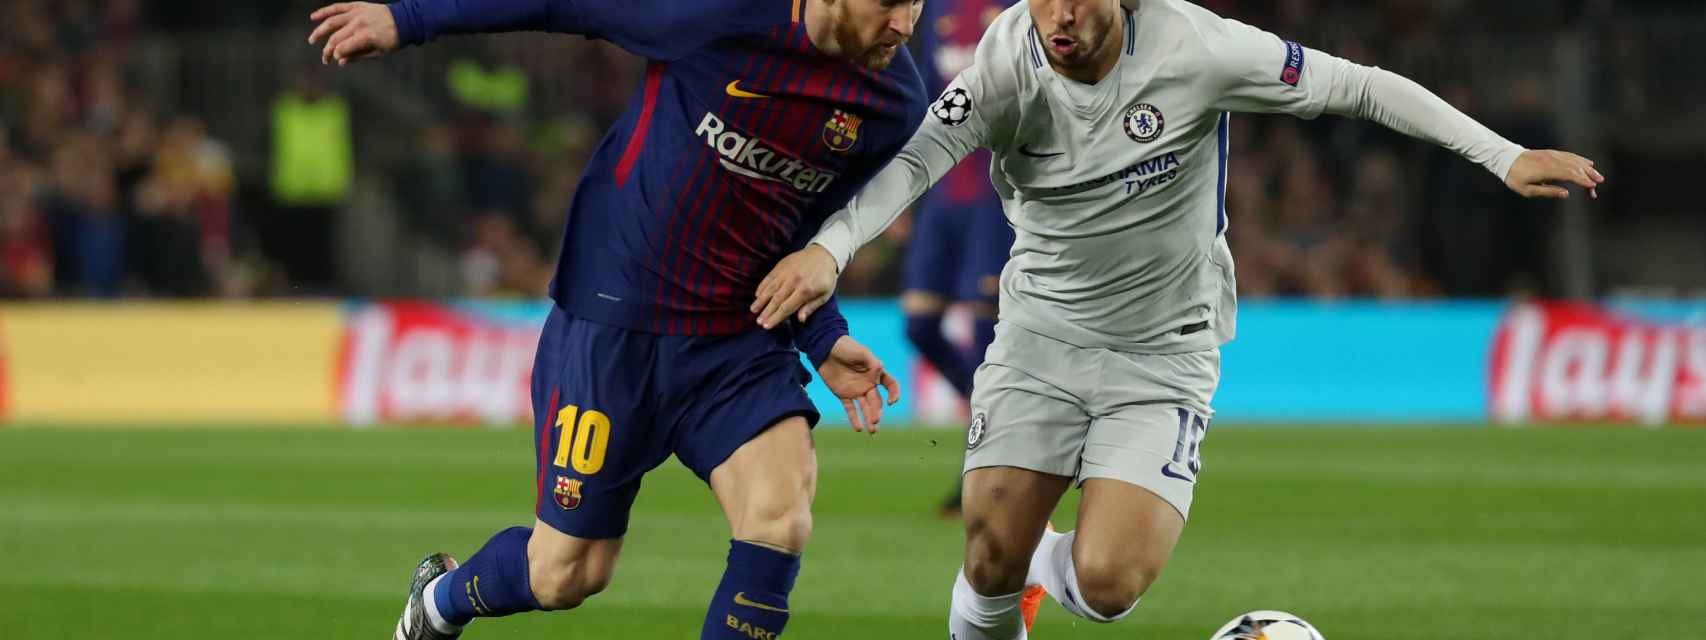 Hazard y Messi en el Cehlsea - Barcelona de la ida.